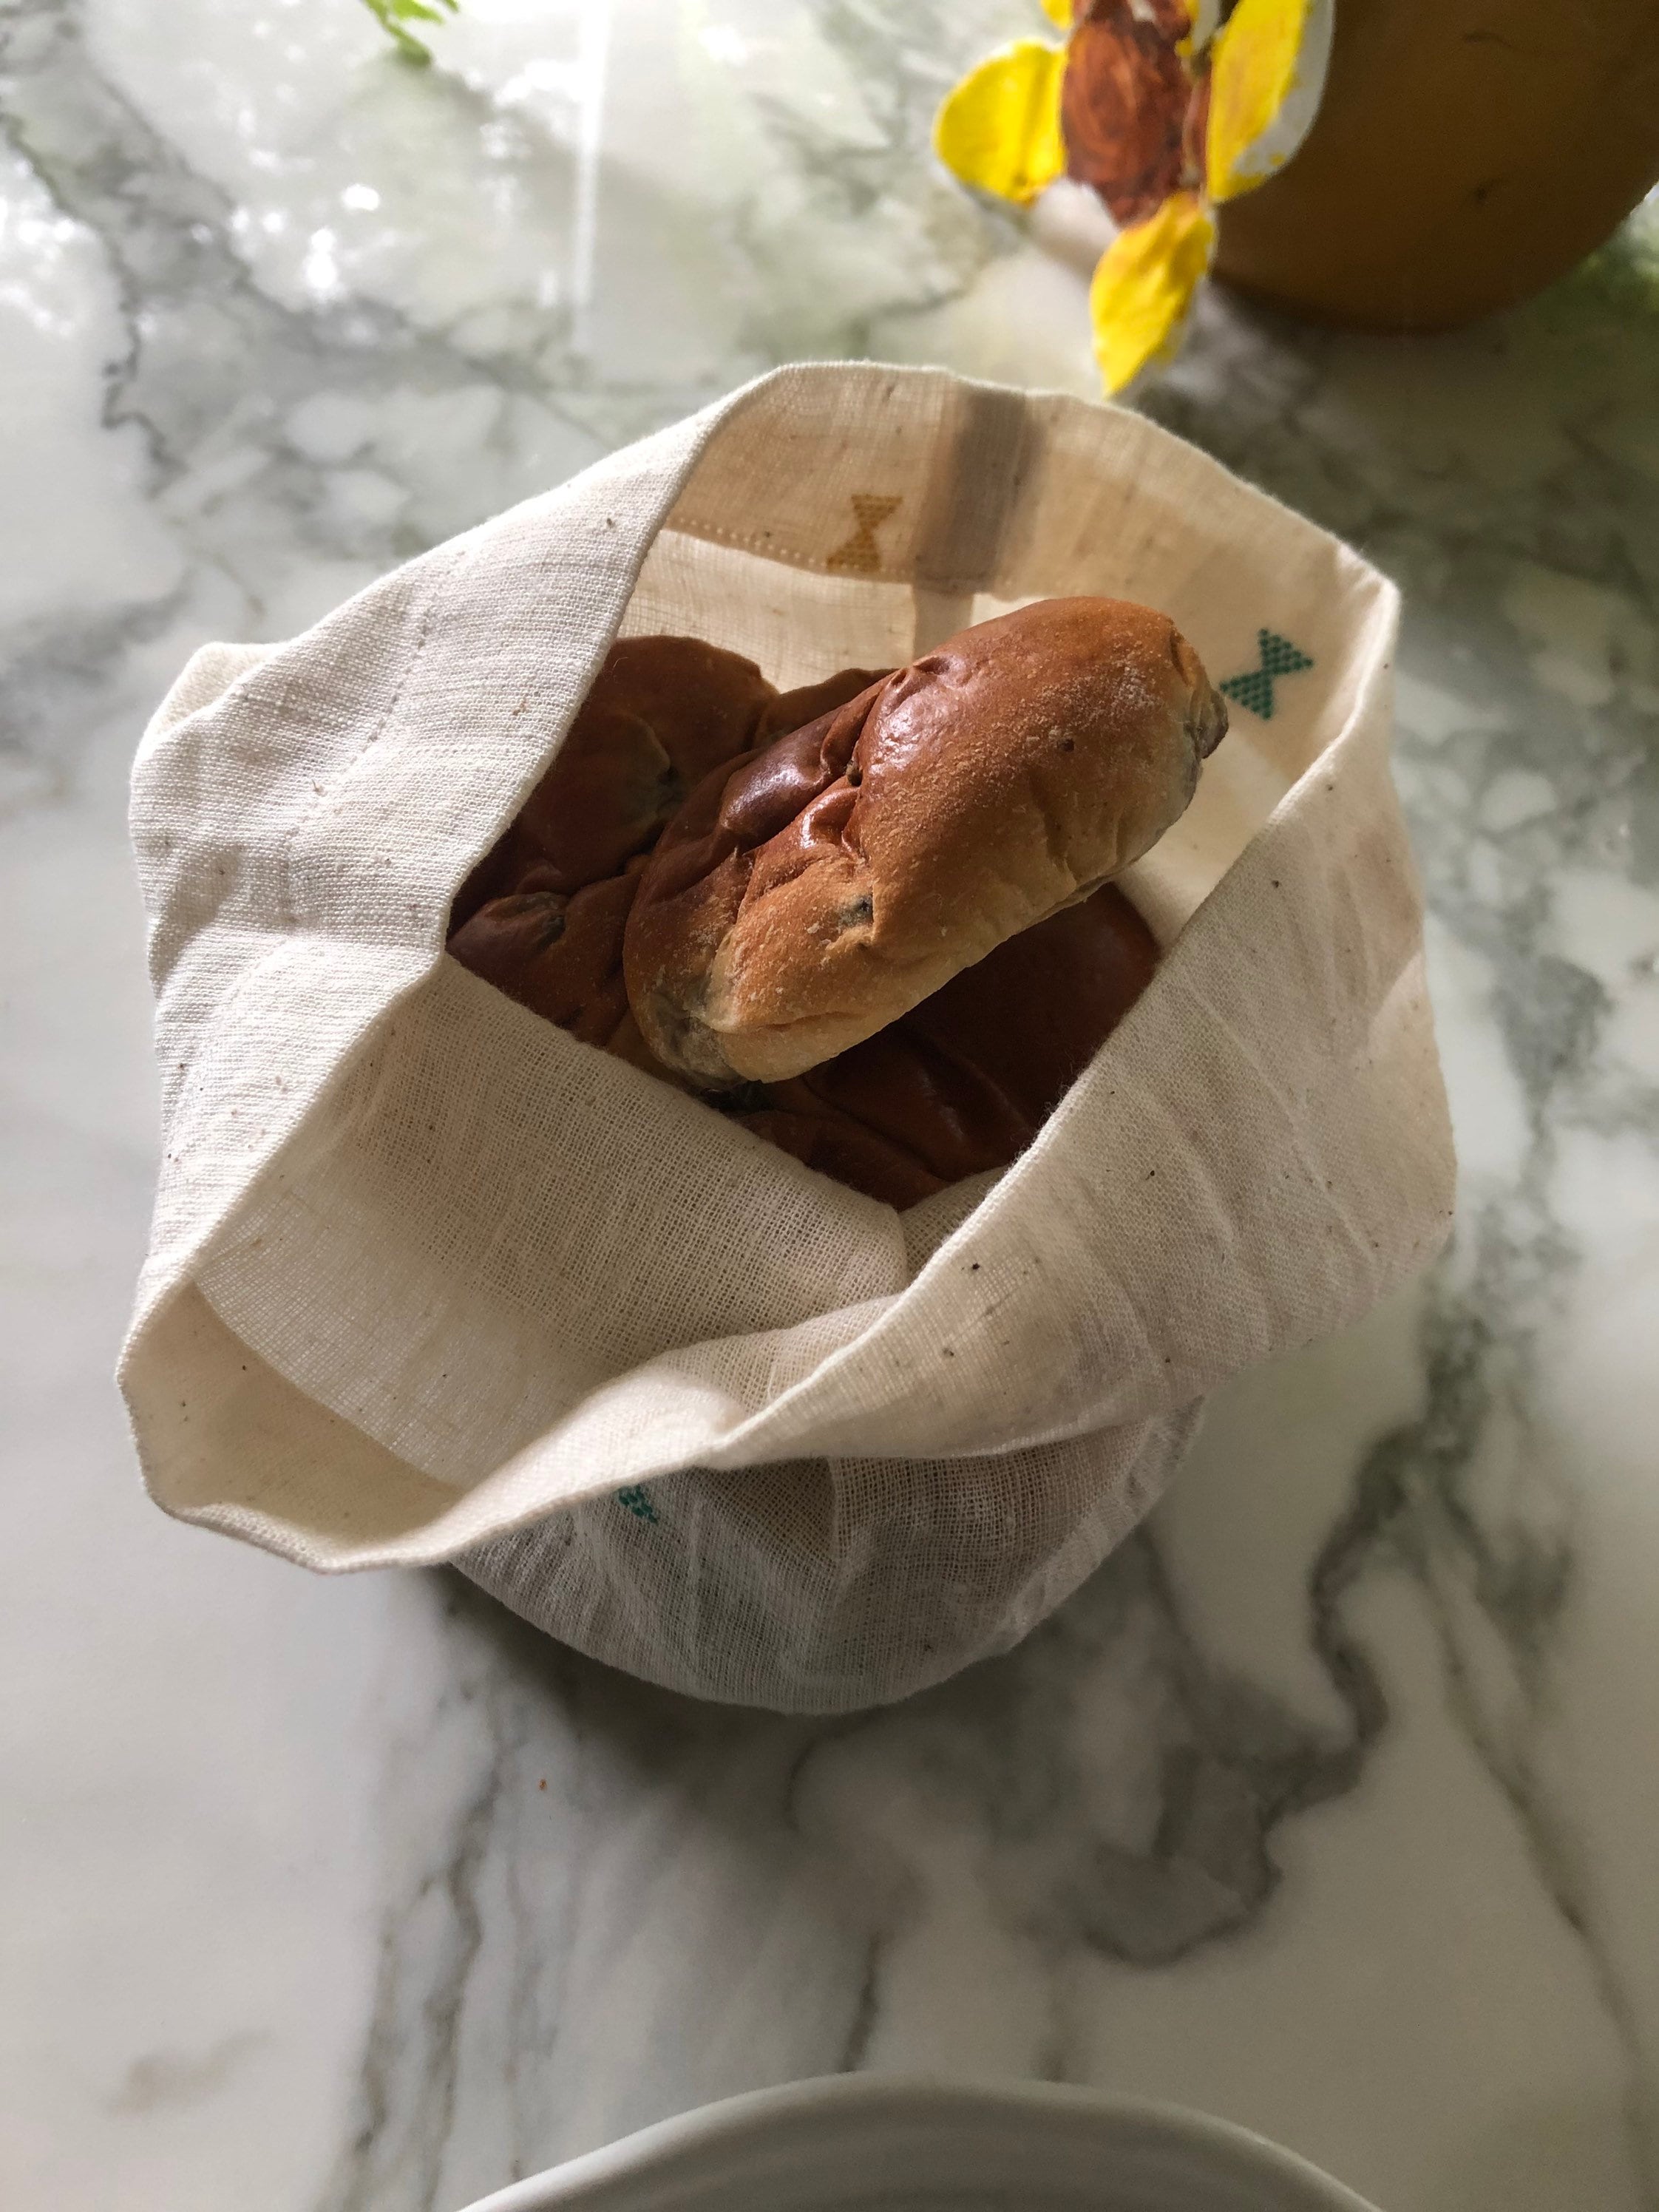 Piccolo sacchetto di pane in tessuto, porta pane da tavola, cestino del pane  per bancone, cestino